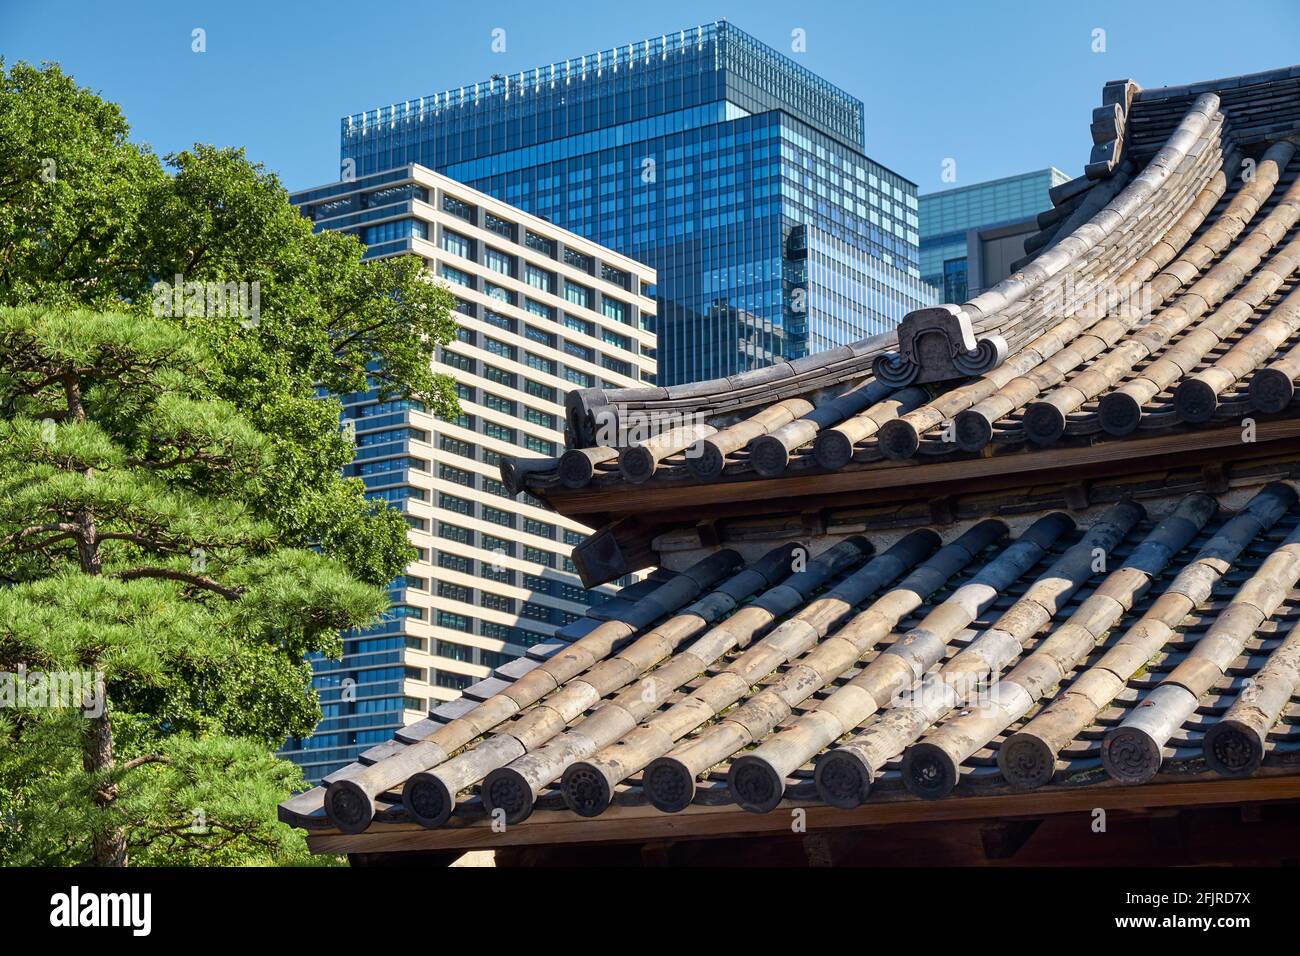 Der Blick auf das alte traditionelle geschwungene Dach des Kaiserpalastgebäudes und die modernen Wolkenkratzer des Handelszentrums im Chiyoda-Bezirk von Tokio. Japa Stockfoto